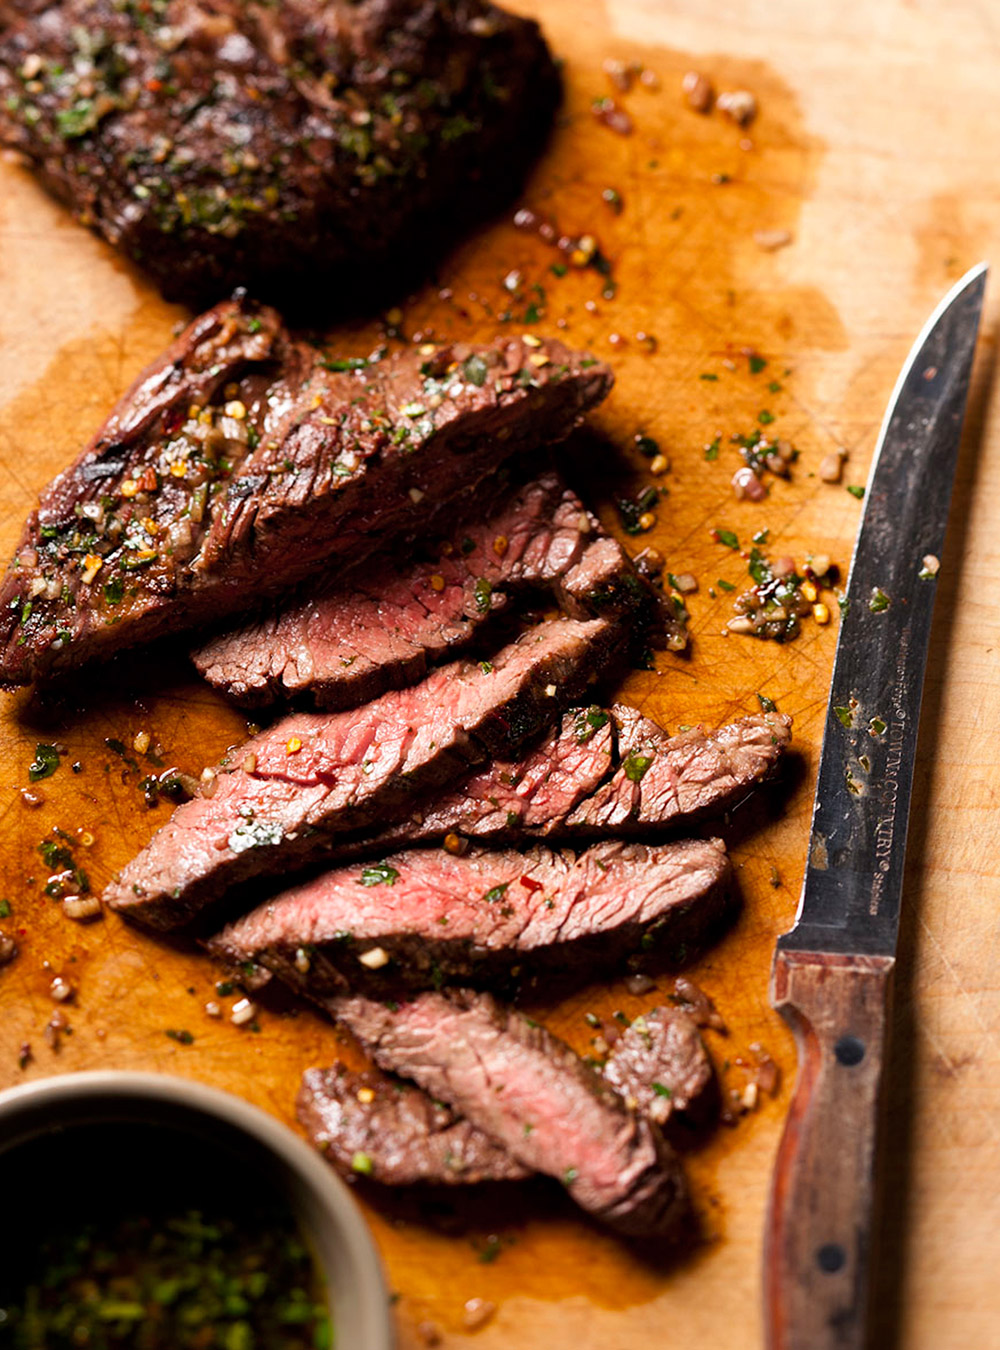 Recette de boeuf: tout sur les rôtis ou les steaks de boeuf  page 7 ...